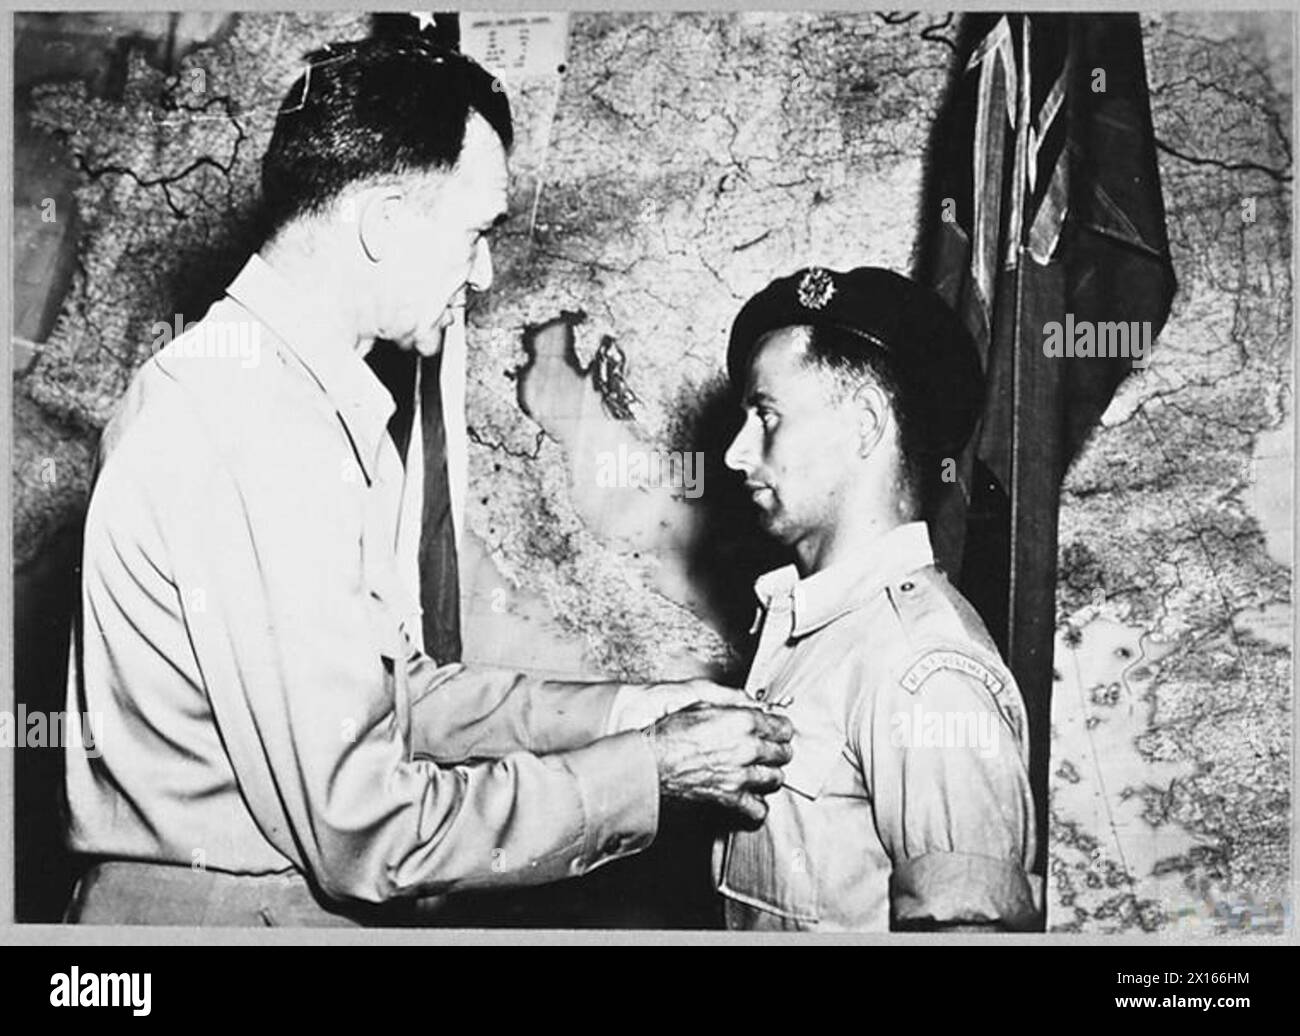 SERGEANT DES R.A.F. REGIMENTS gewinnt US-MEDAILLE - am 26. Februar 1944 lief ein Panzerlandeschiff mit 150 amerikanischen Truppen und einer Reihe deutscher Gefangener auf die Felsen vor der italienischen Küste bei Fomi, Ponza. Sergeant Georger Oert, aus "Mullahed", Tander Abee, Co. Armagh, Nordirland, rief eine Rettungsaktion an und führte sie zu einem steilen 200 Fuß. Klippe, an deren Fuß das Schiff gegen die Felsen geschlagen wurde. Es gab keinen Strand zwischen der Klippe und dem Meer, und Sergeant Overend machte sich den Weg nach unten gegen die fast senkrechte Seite der Klippe. Dann wettete er mit der Brust tief hinein Stockfoto